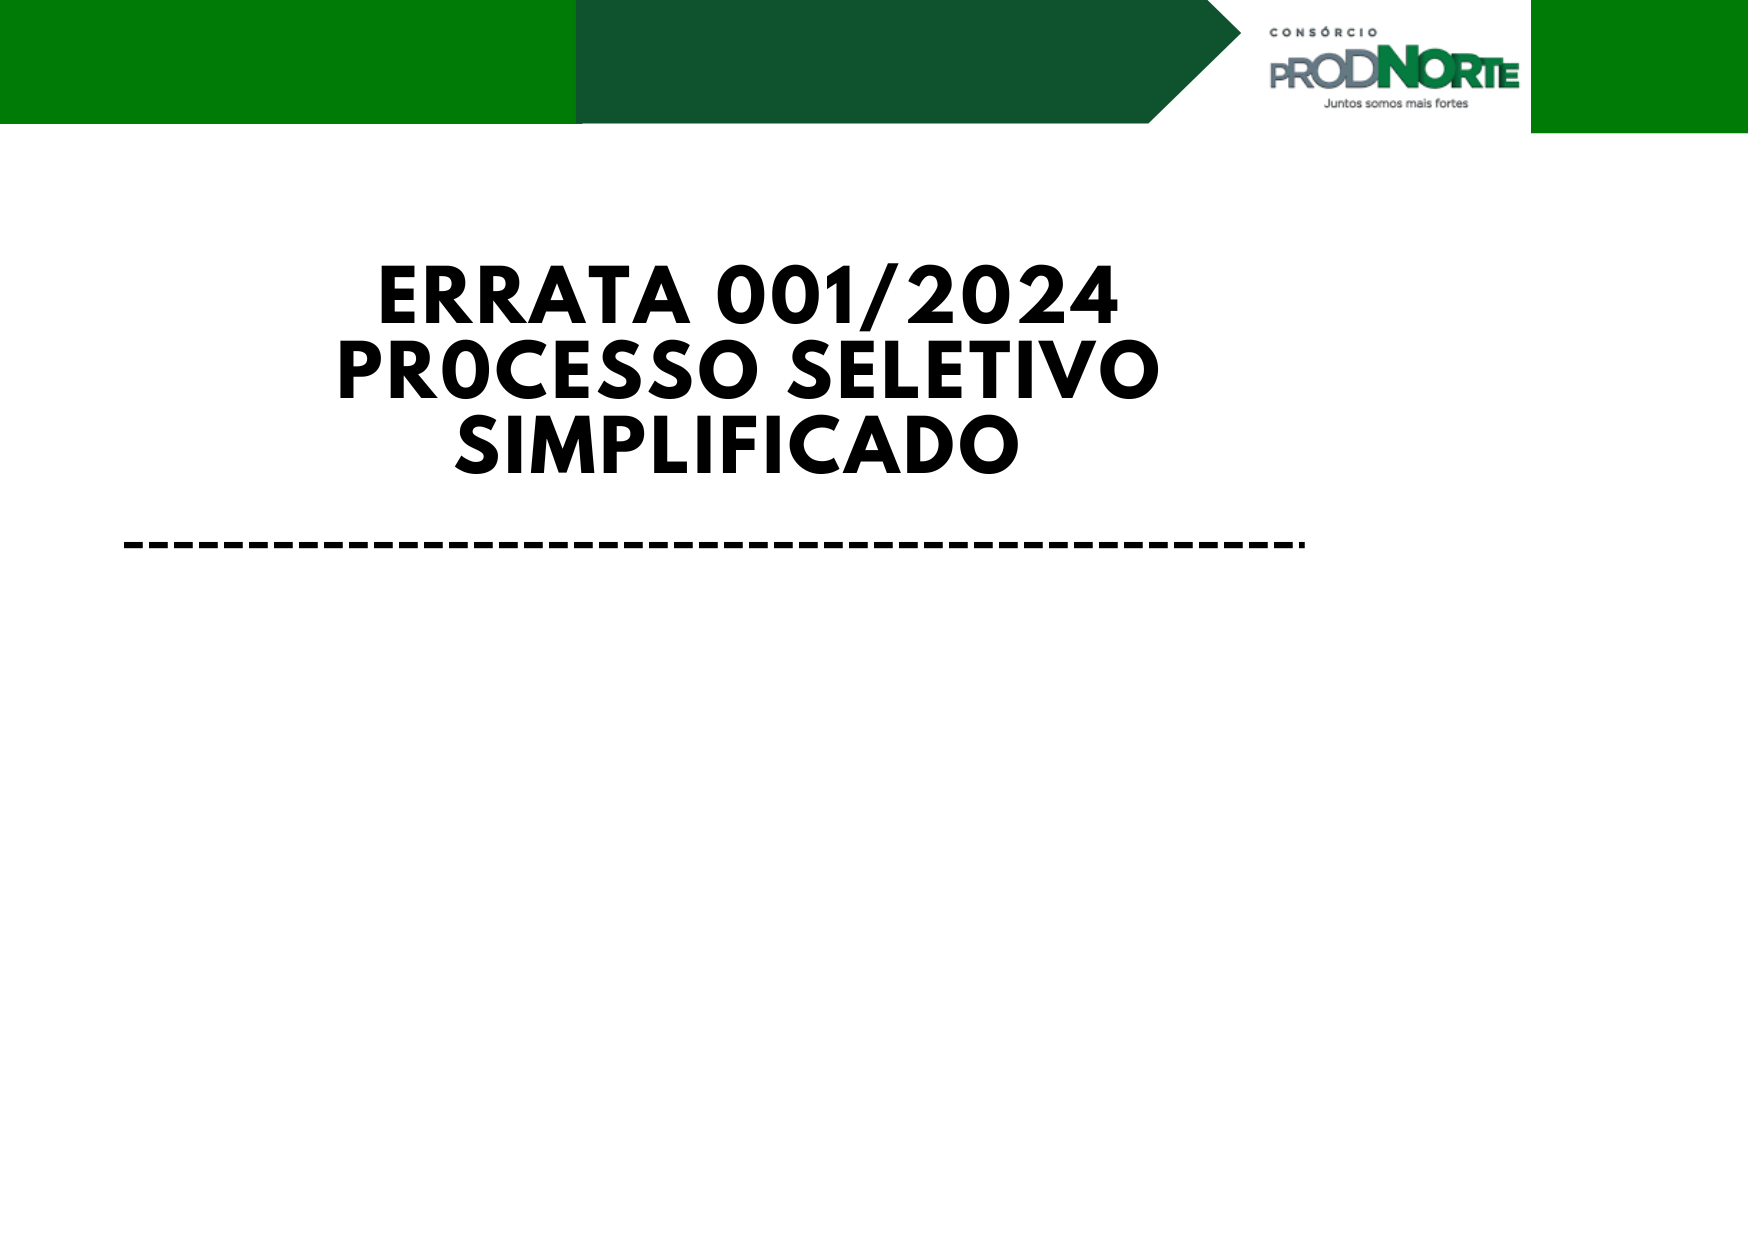 ERRATA 001/2024 - PROCESSO SELETIVO